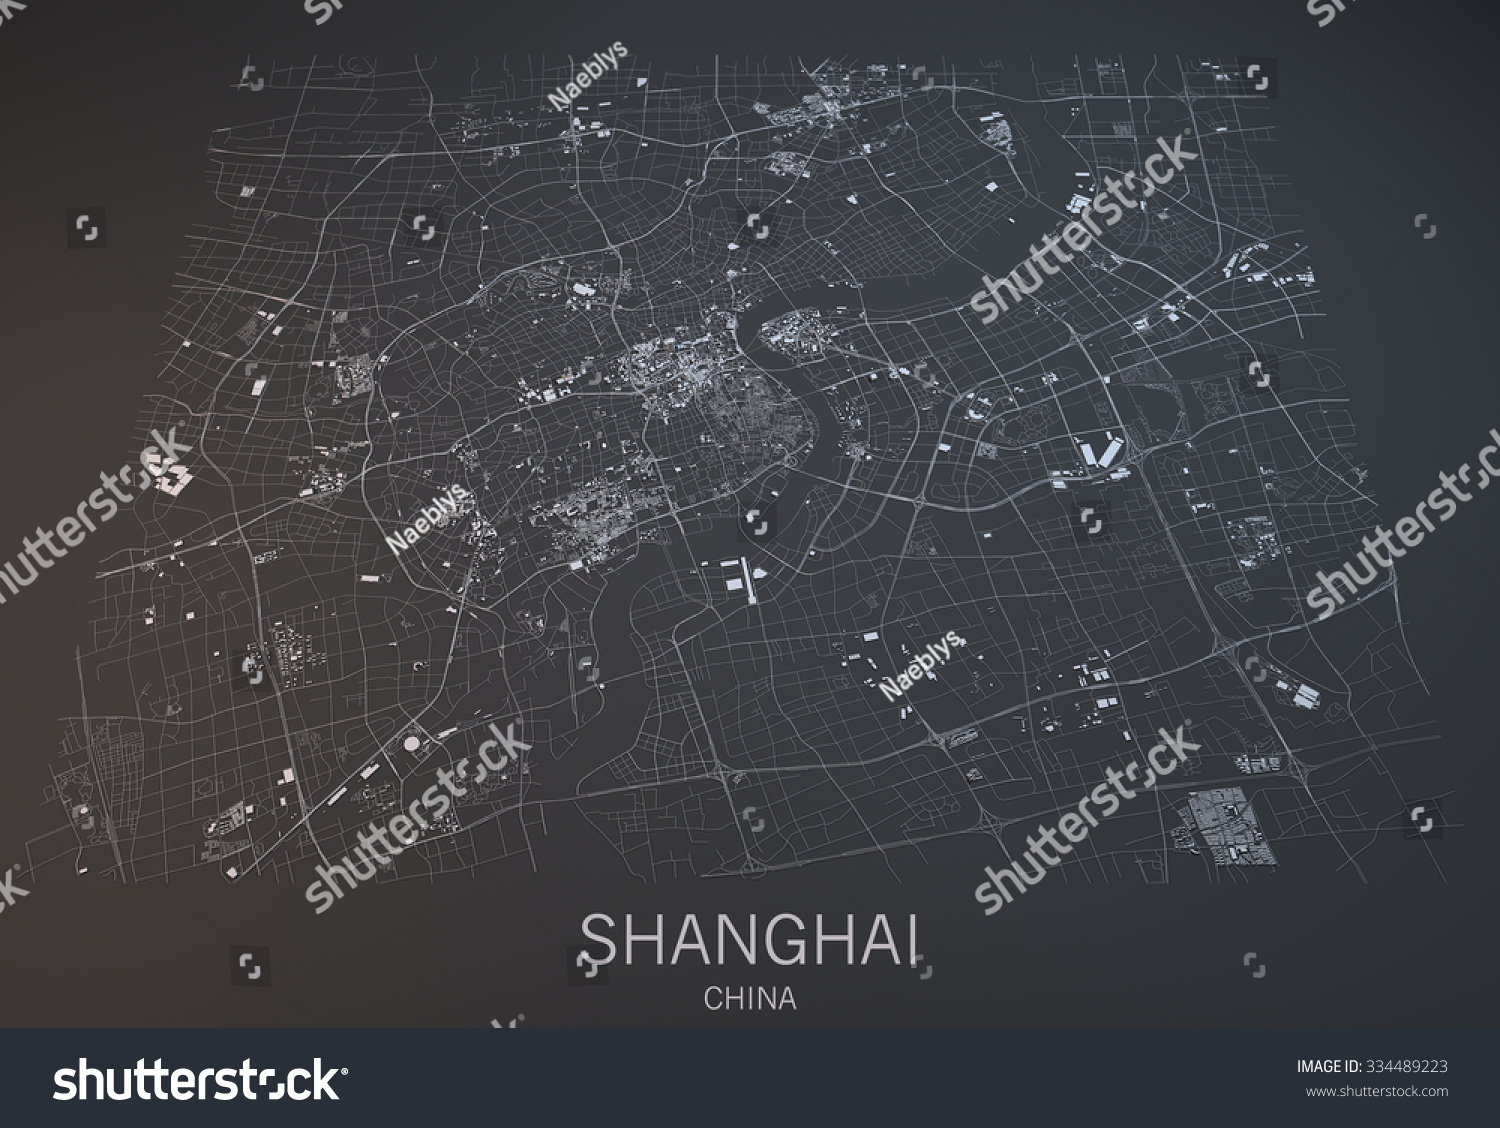 Shanghai Map Satellite View Section 3d Stock Illustration 334489223  Shutterstock